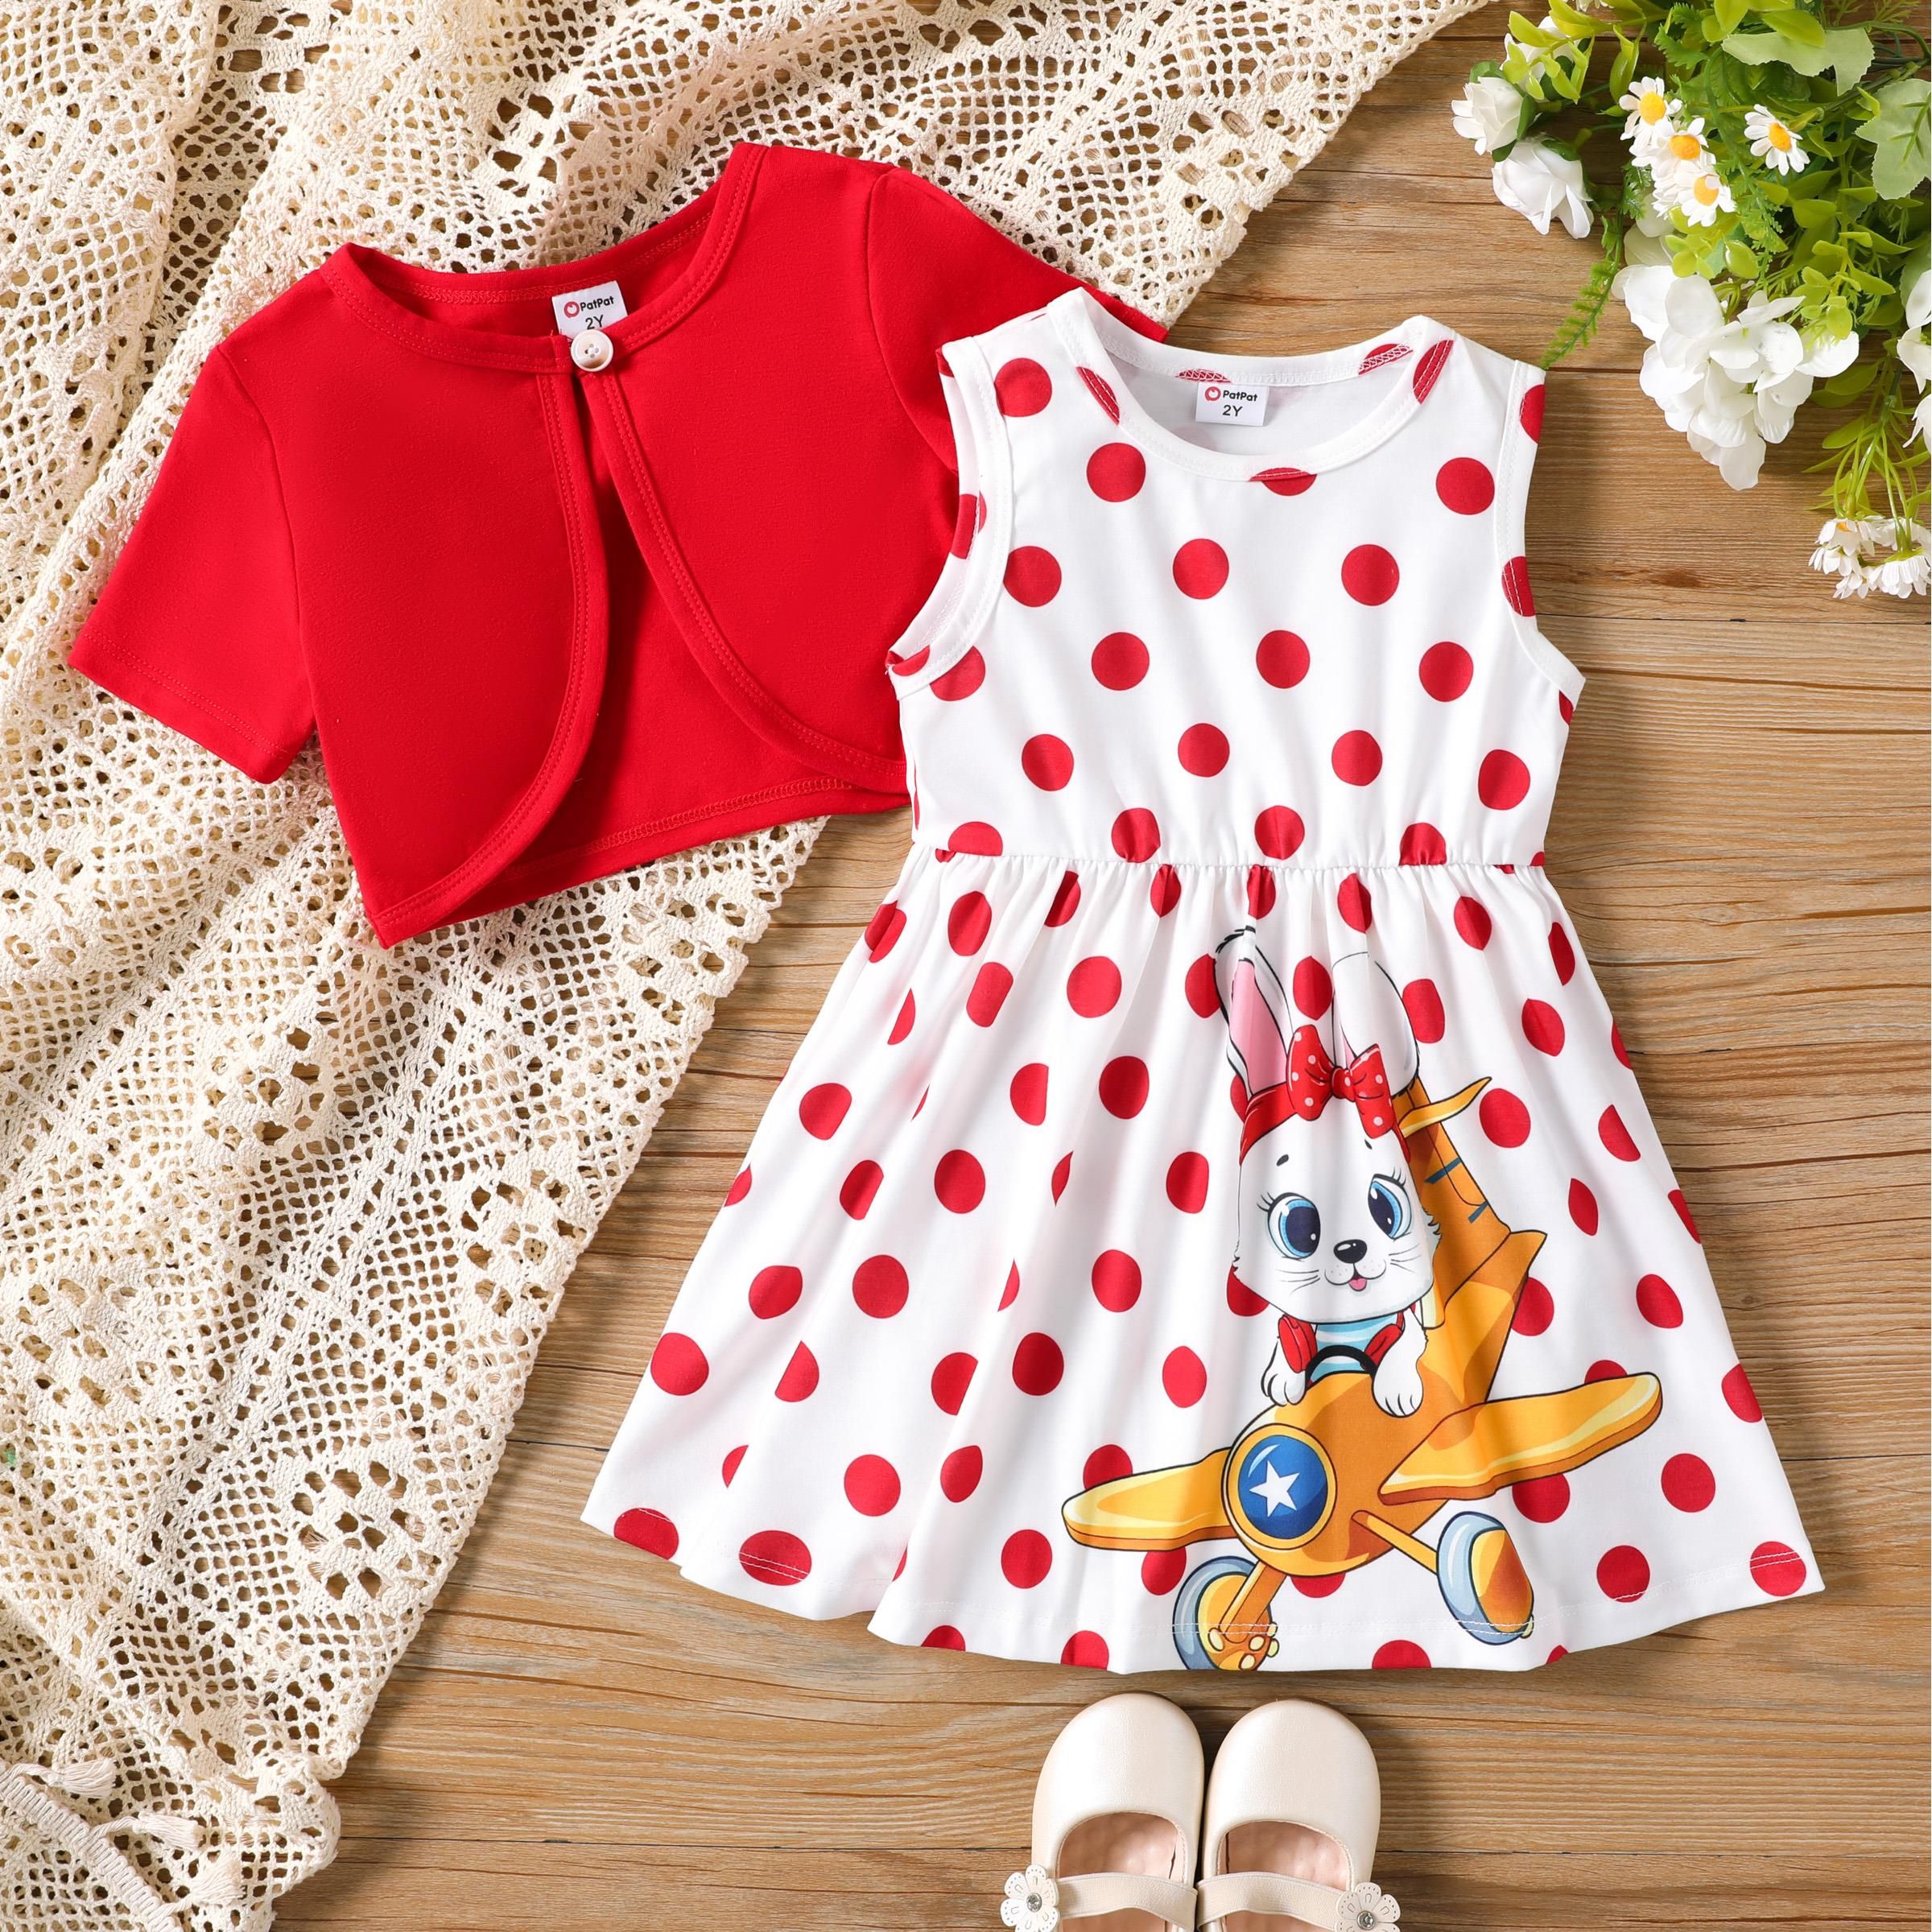 Toddler Girl 2pcs Cardigan and Rabbit Polka Dots Dress Set